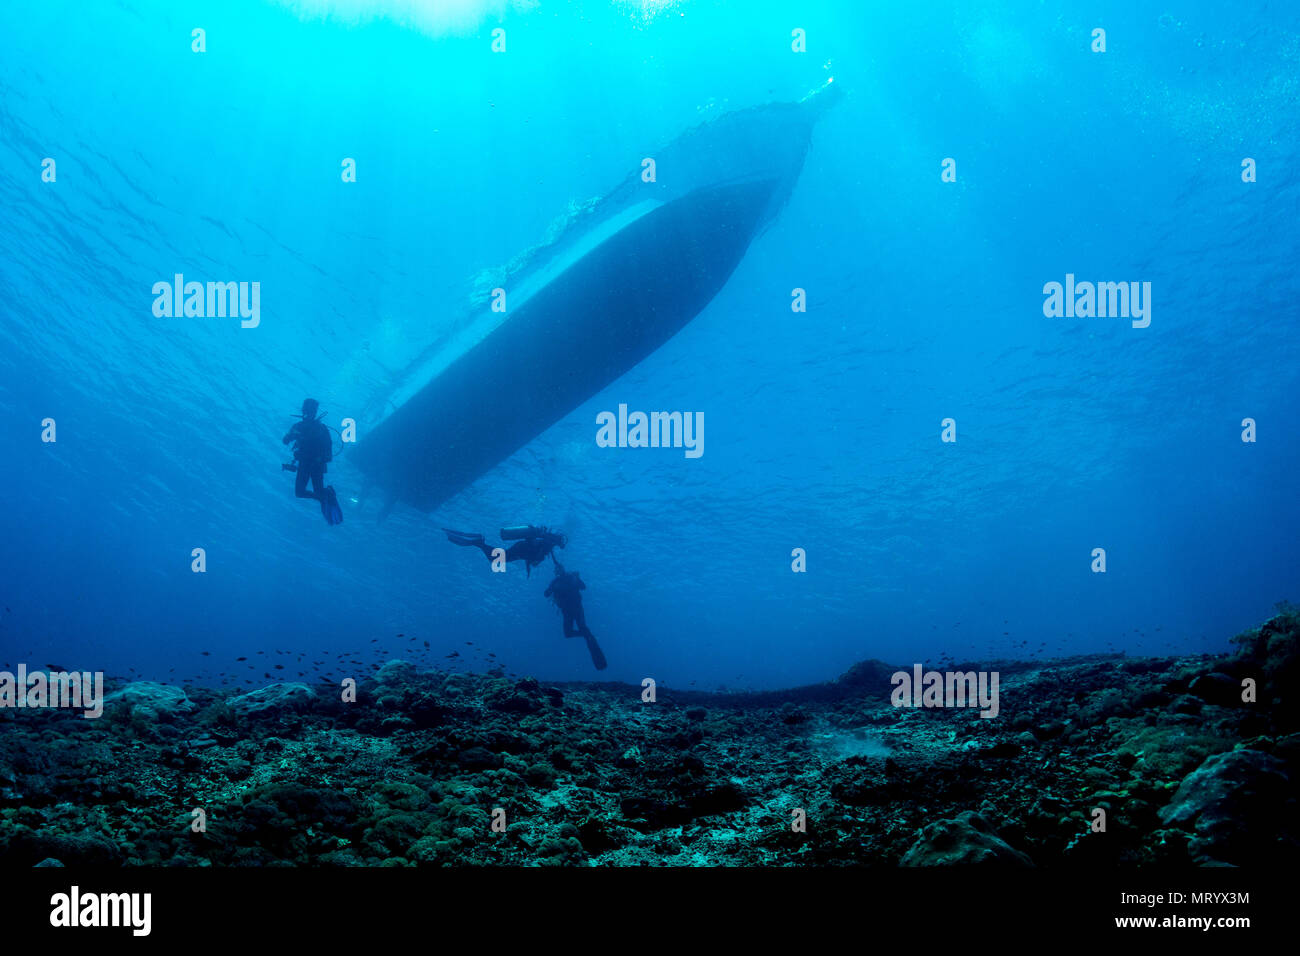 Les plongeurs descendent pour commencer une plongée à Nusa Penida, une île au large de Bali, Indonésie. Banque D'Images